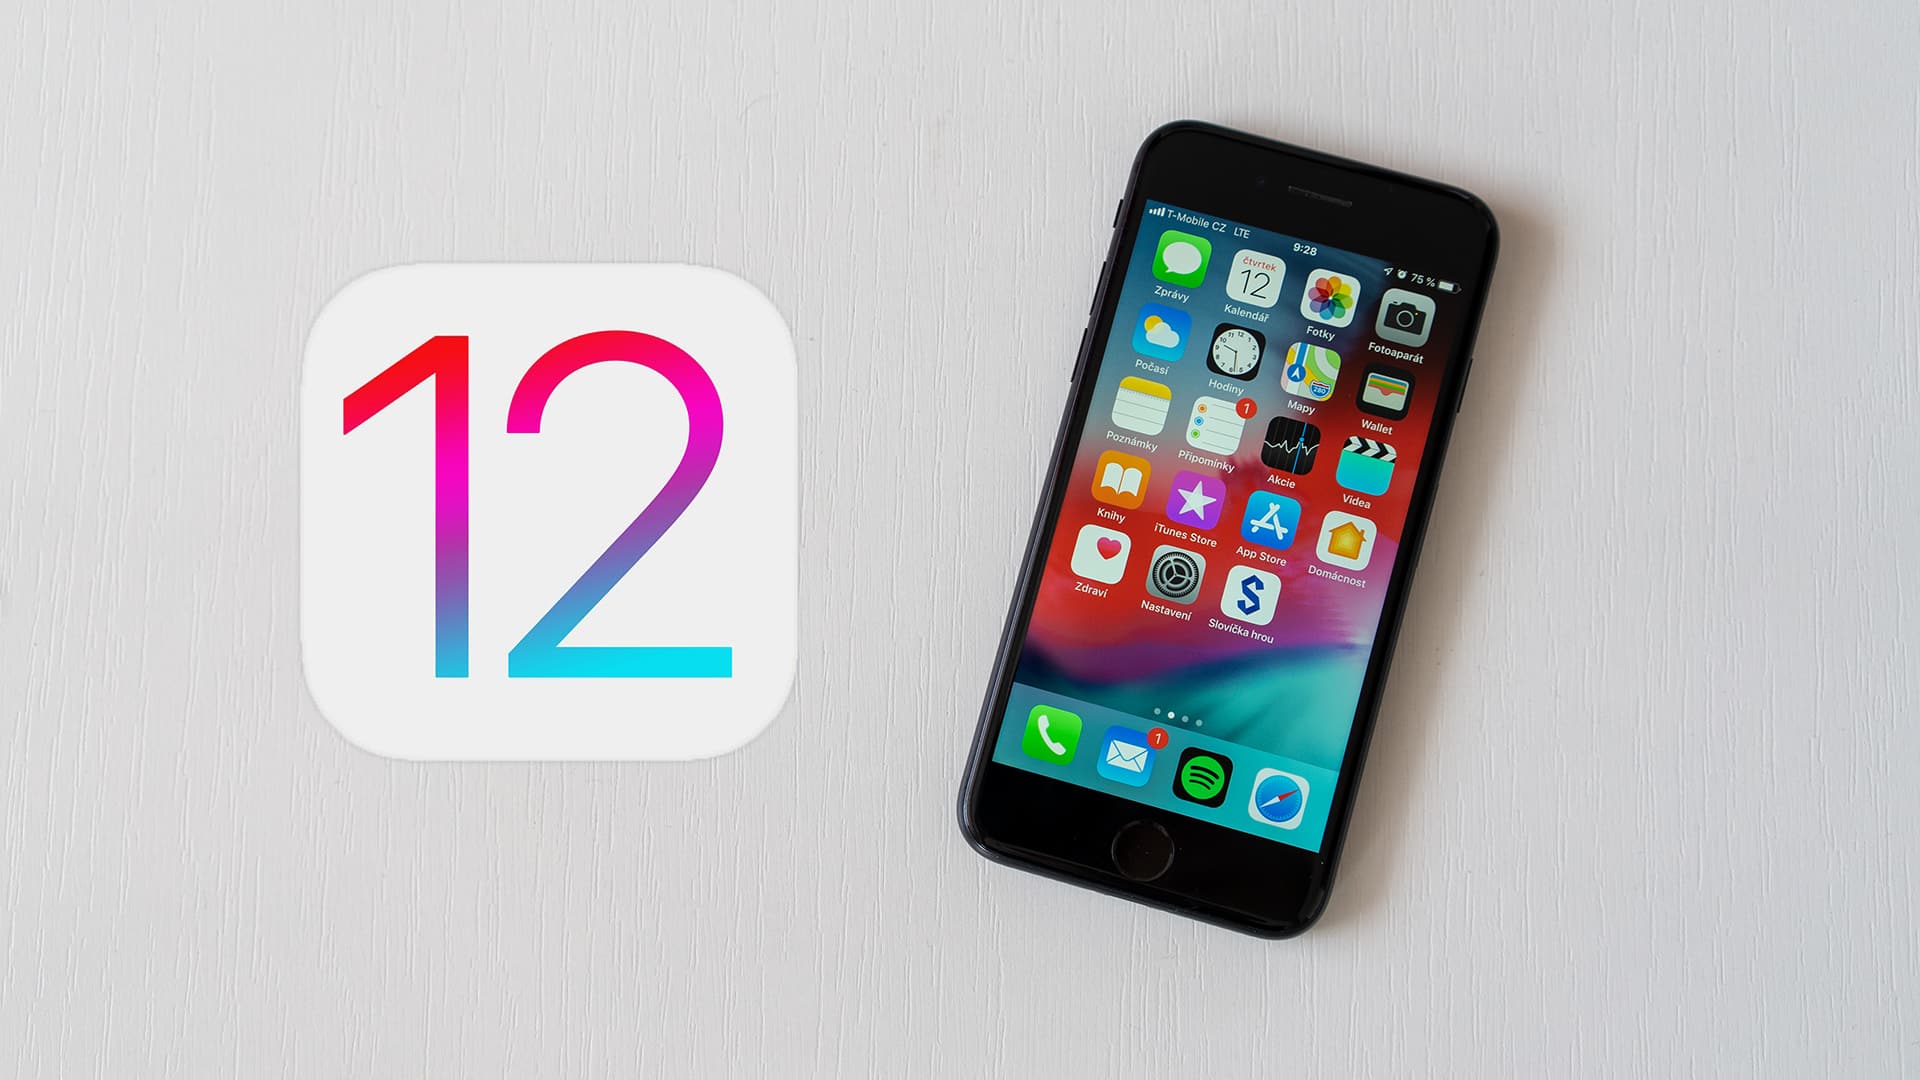 iOS 12.5.5